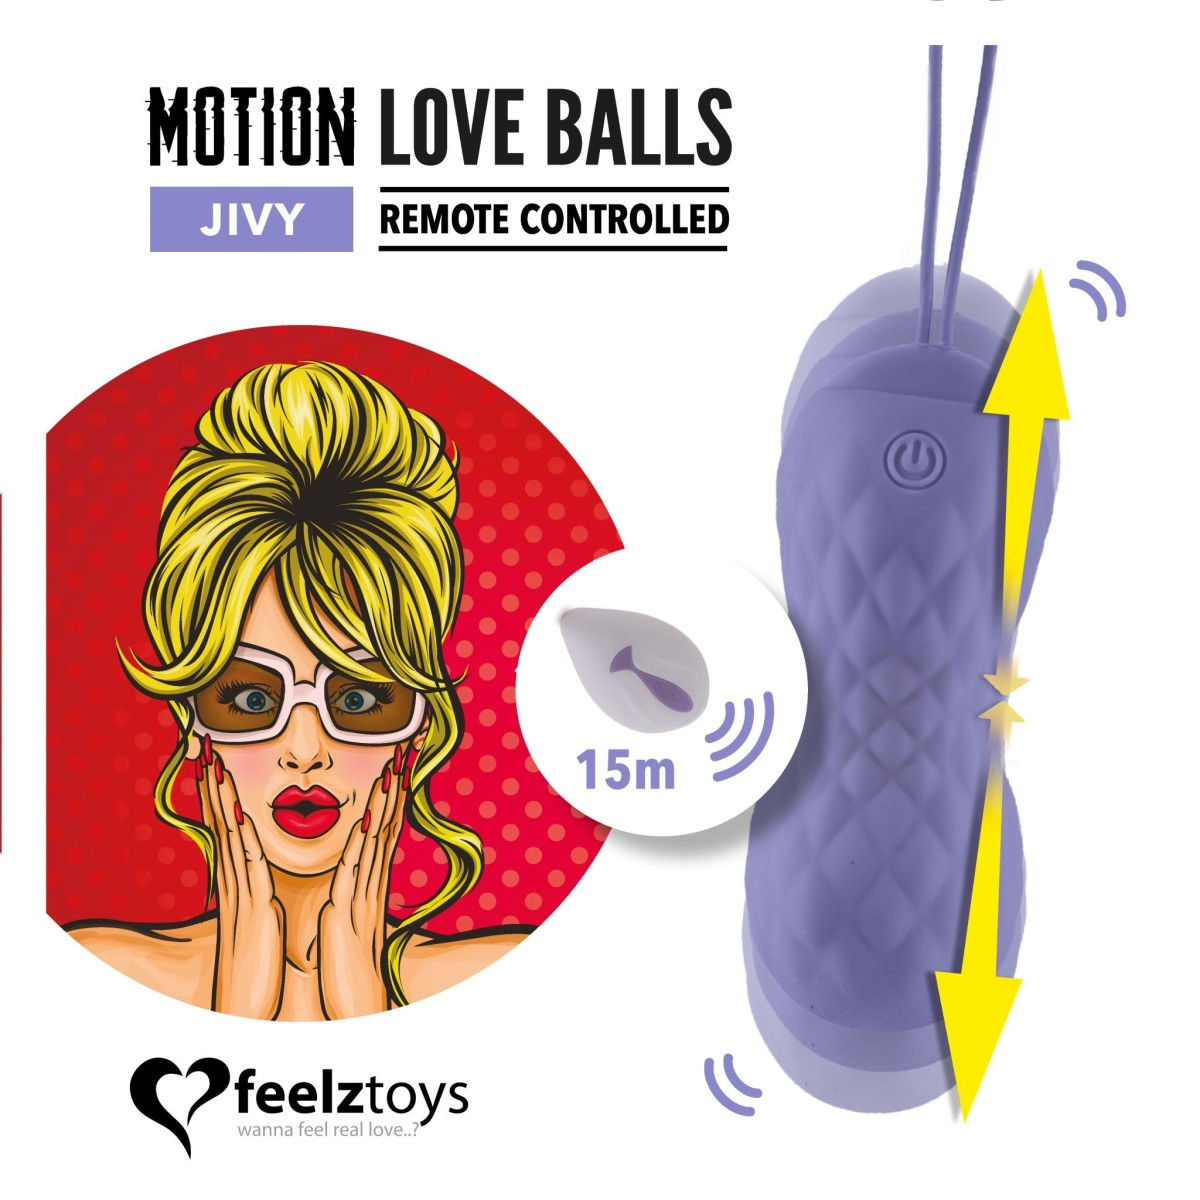 FeelzToys Jivy Remote Controlled Motion Love Balls, silikonové vaginální kuličky s dálkovým ovládáním s průměrem 3,4 cm